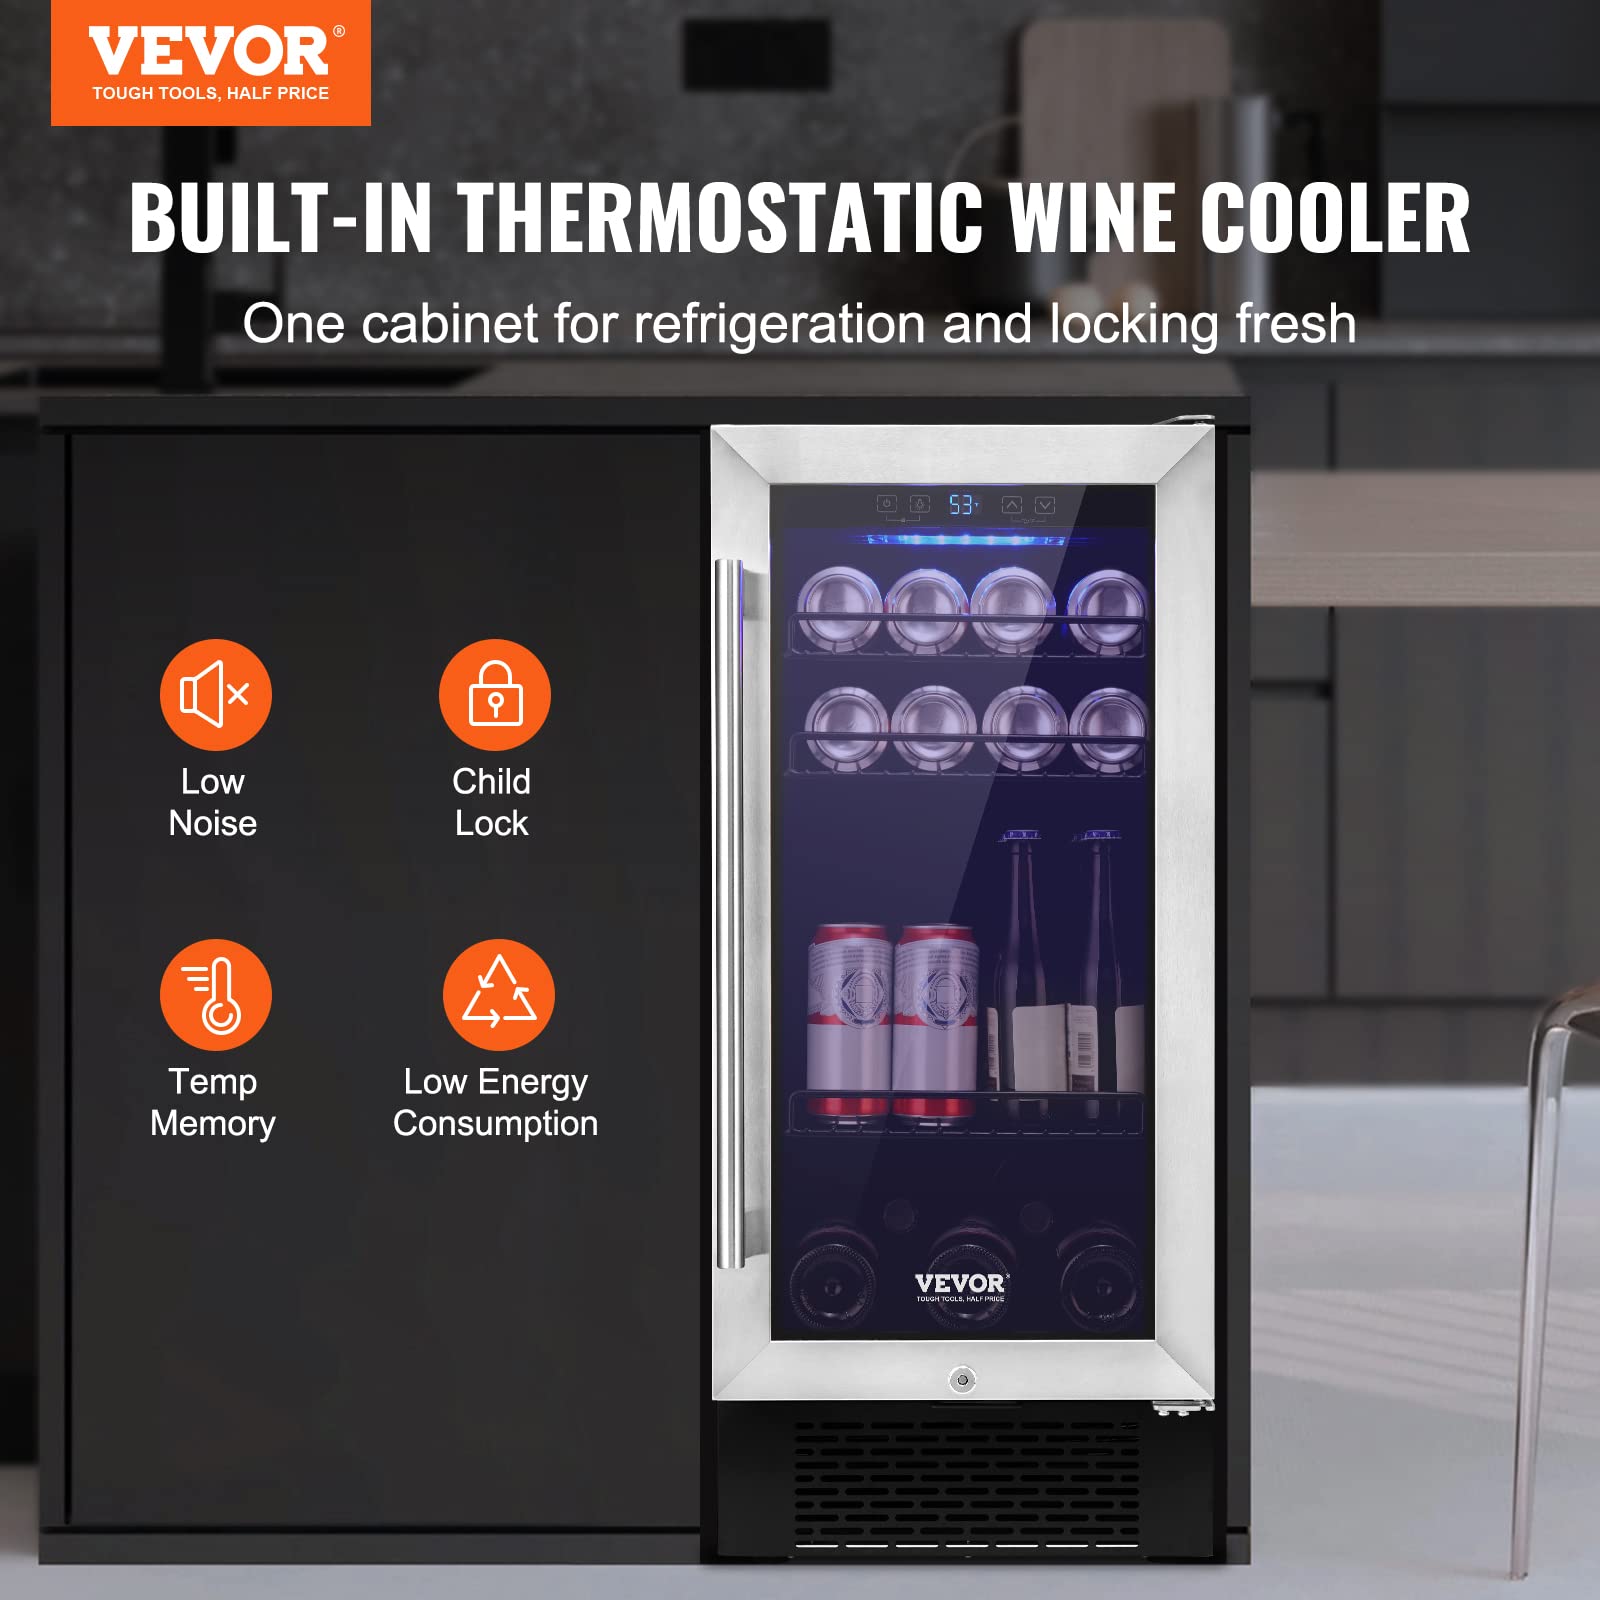 VEVOR 96 Cans Built-in or Freestanding Wine Refrigerator Beverage Cooler with Blue LED Light, Silver